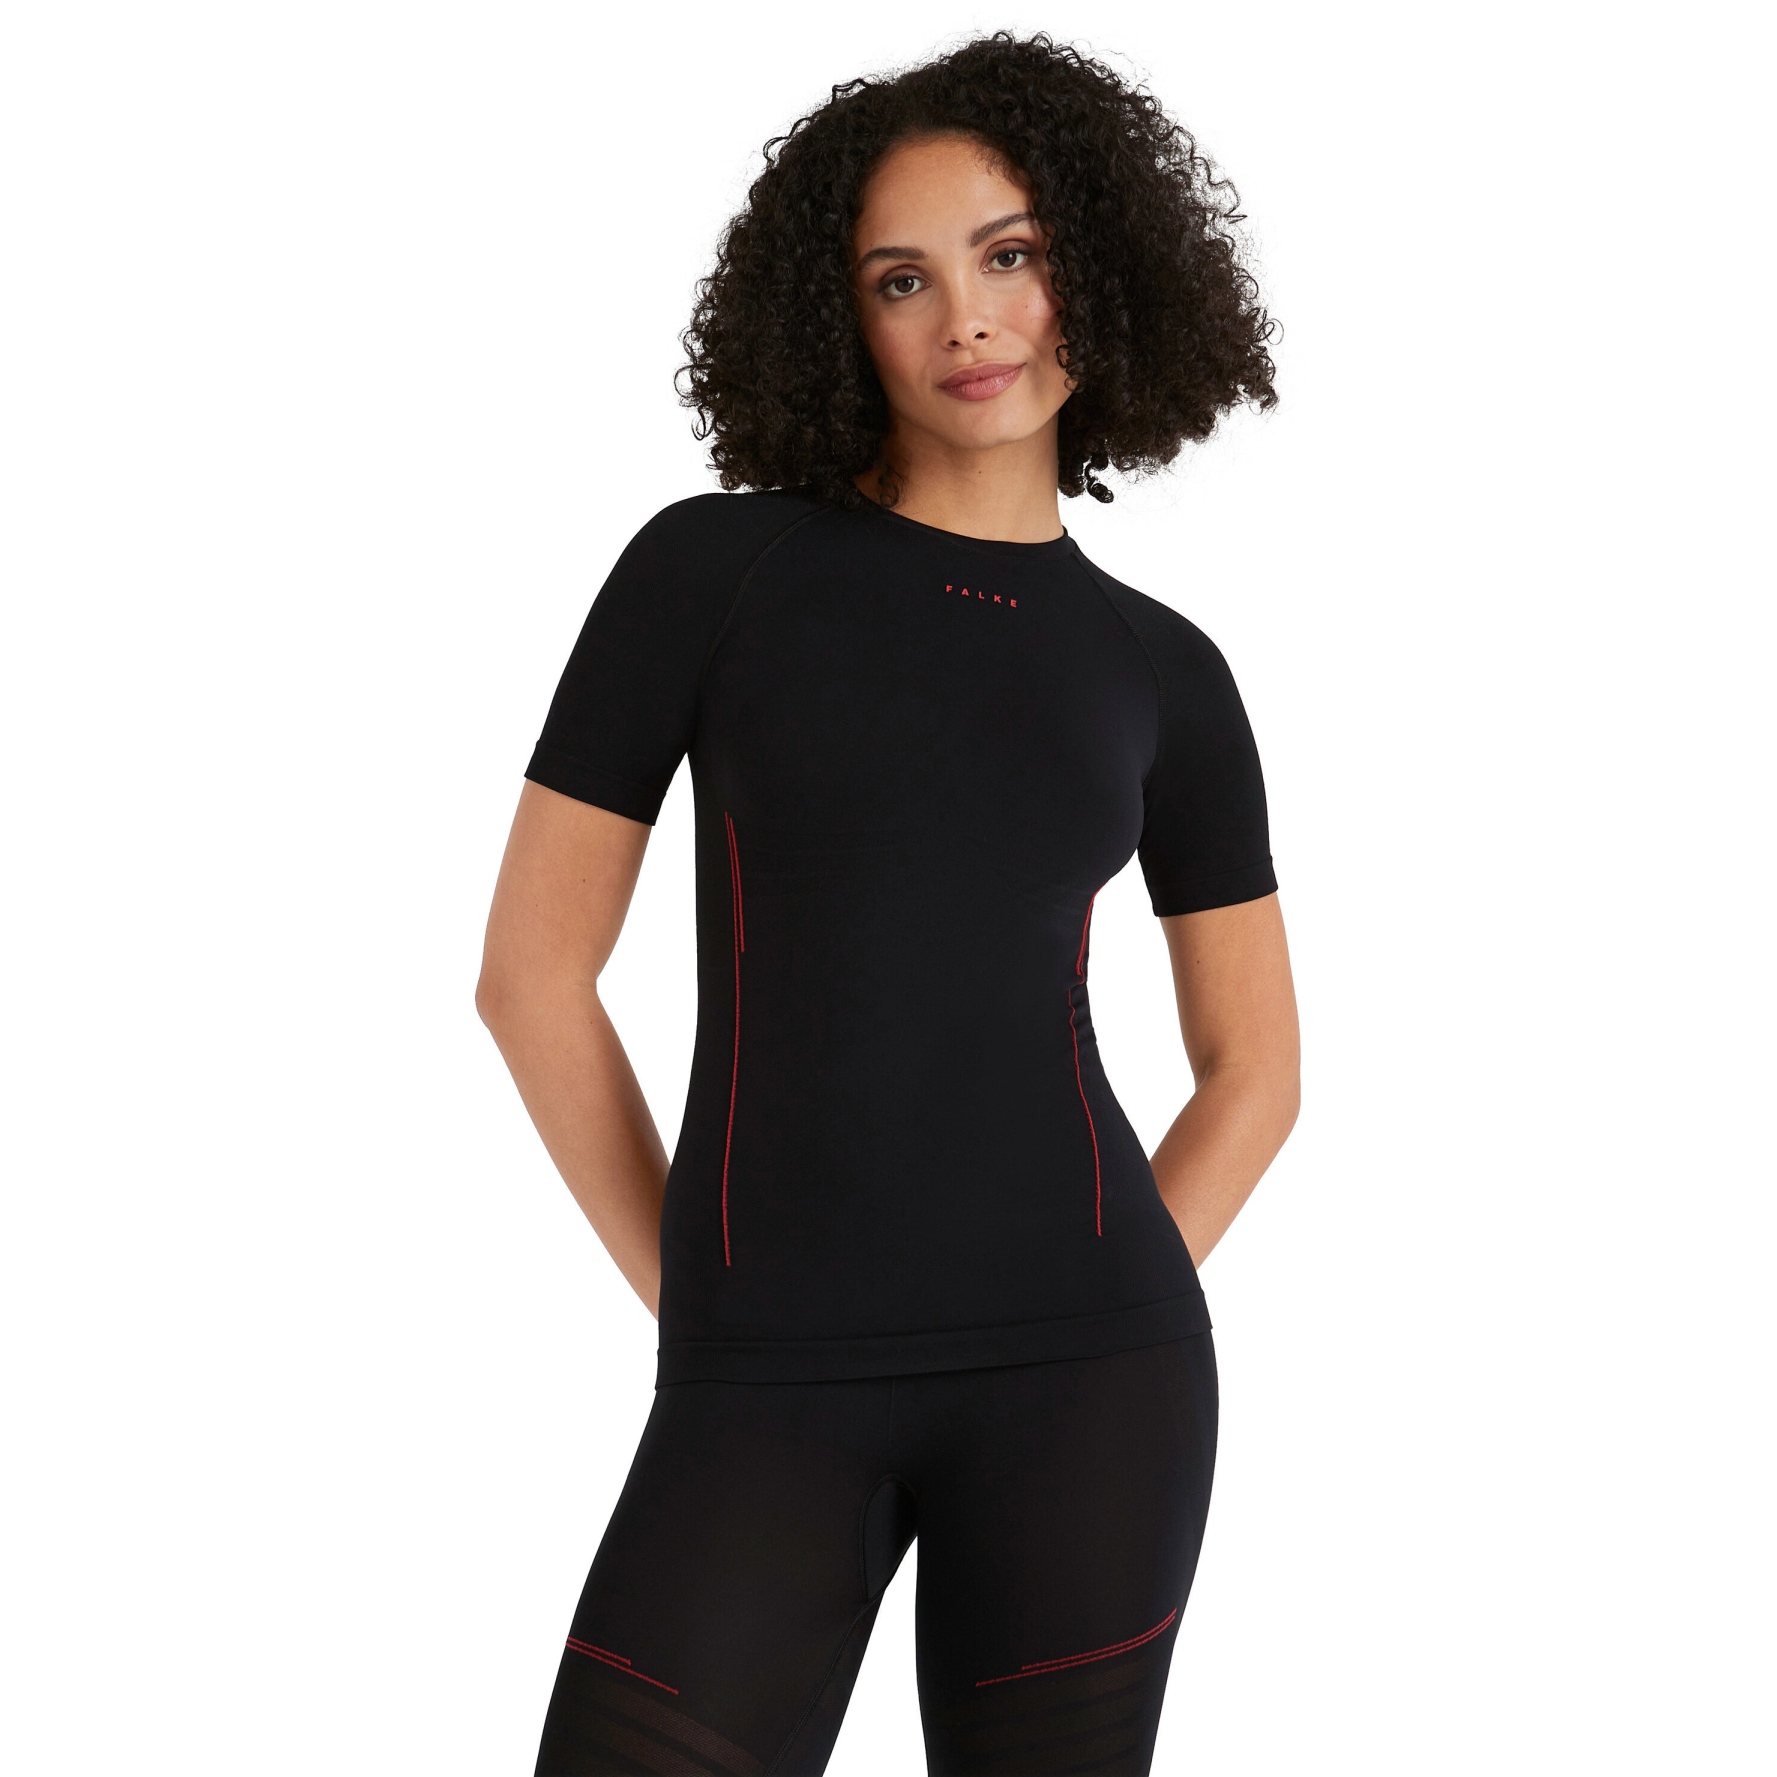 Produktbild von Falke Warm Trend Kurzarmshirt Damen - schwarz 3000